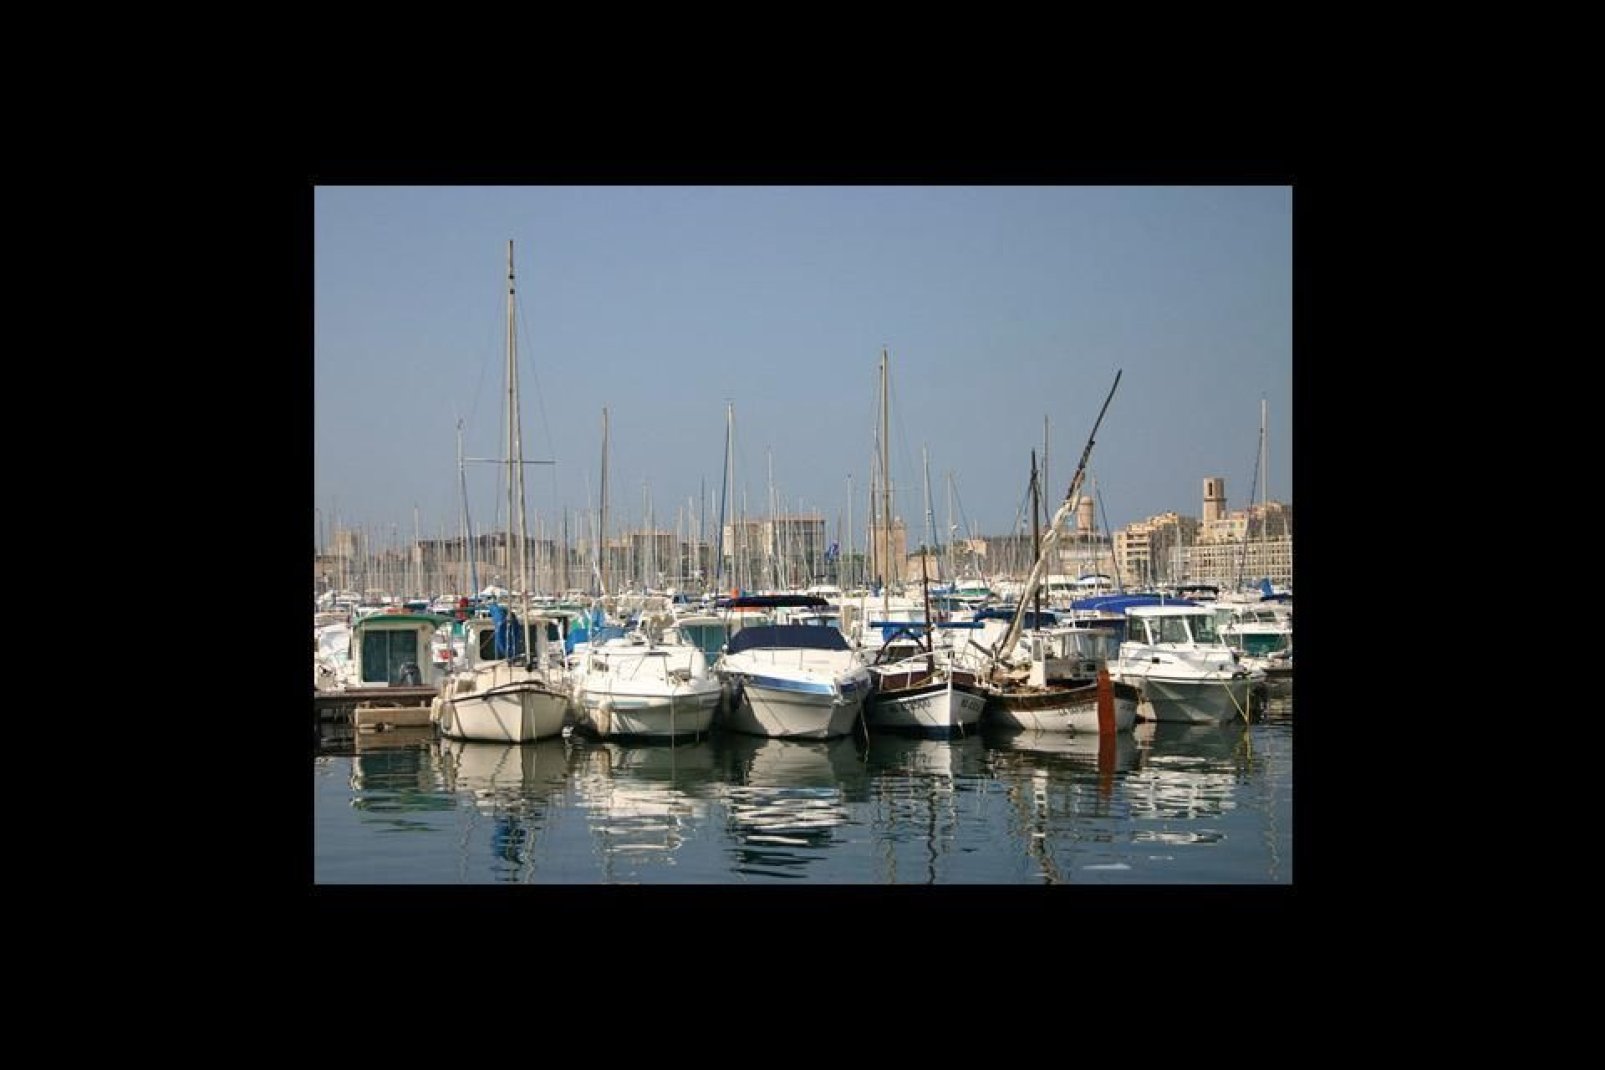 Le port de plaisance de Marseille, un lieu emblématique où se déroule de nombreuses manifestations.